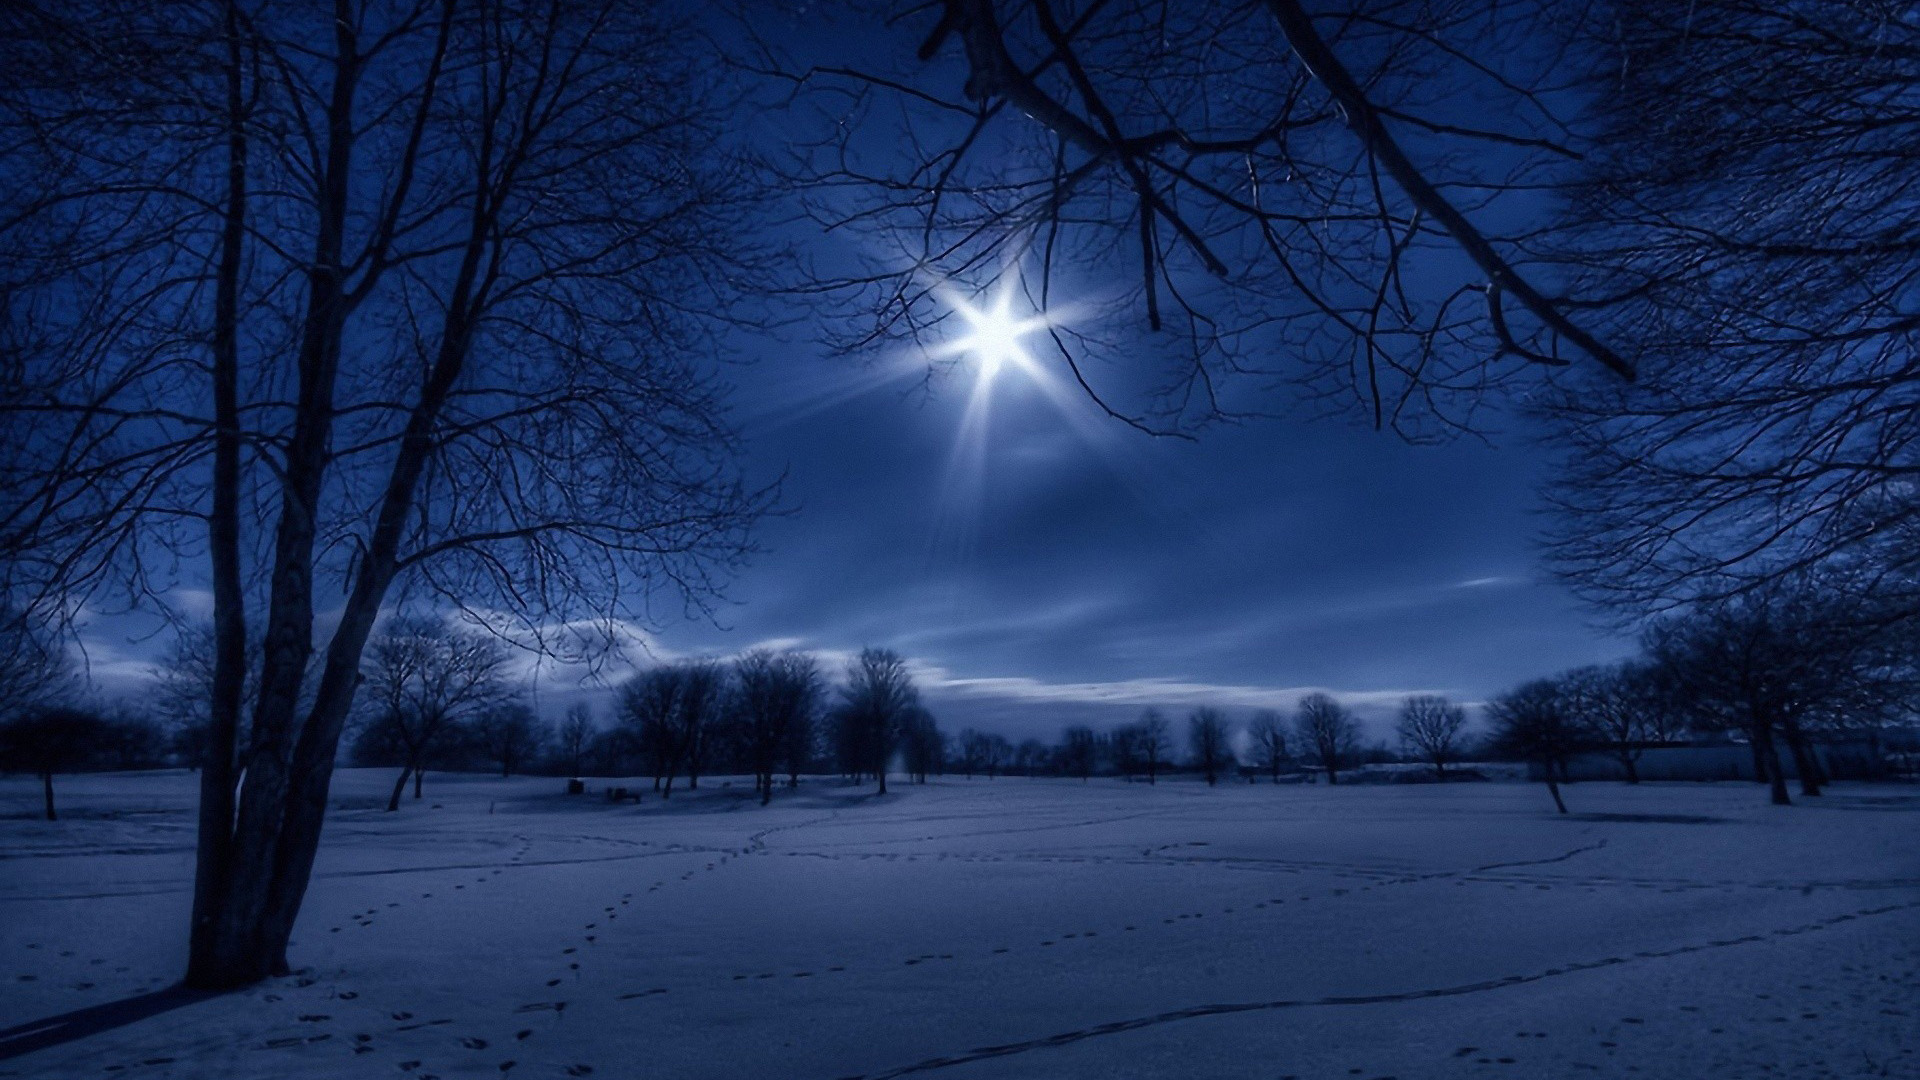 冬天的夜晚,雪,树木,天空,风景桌面壁纸